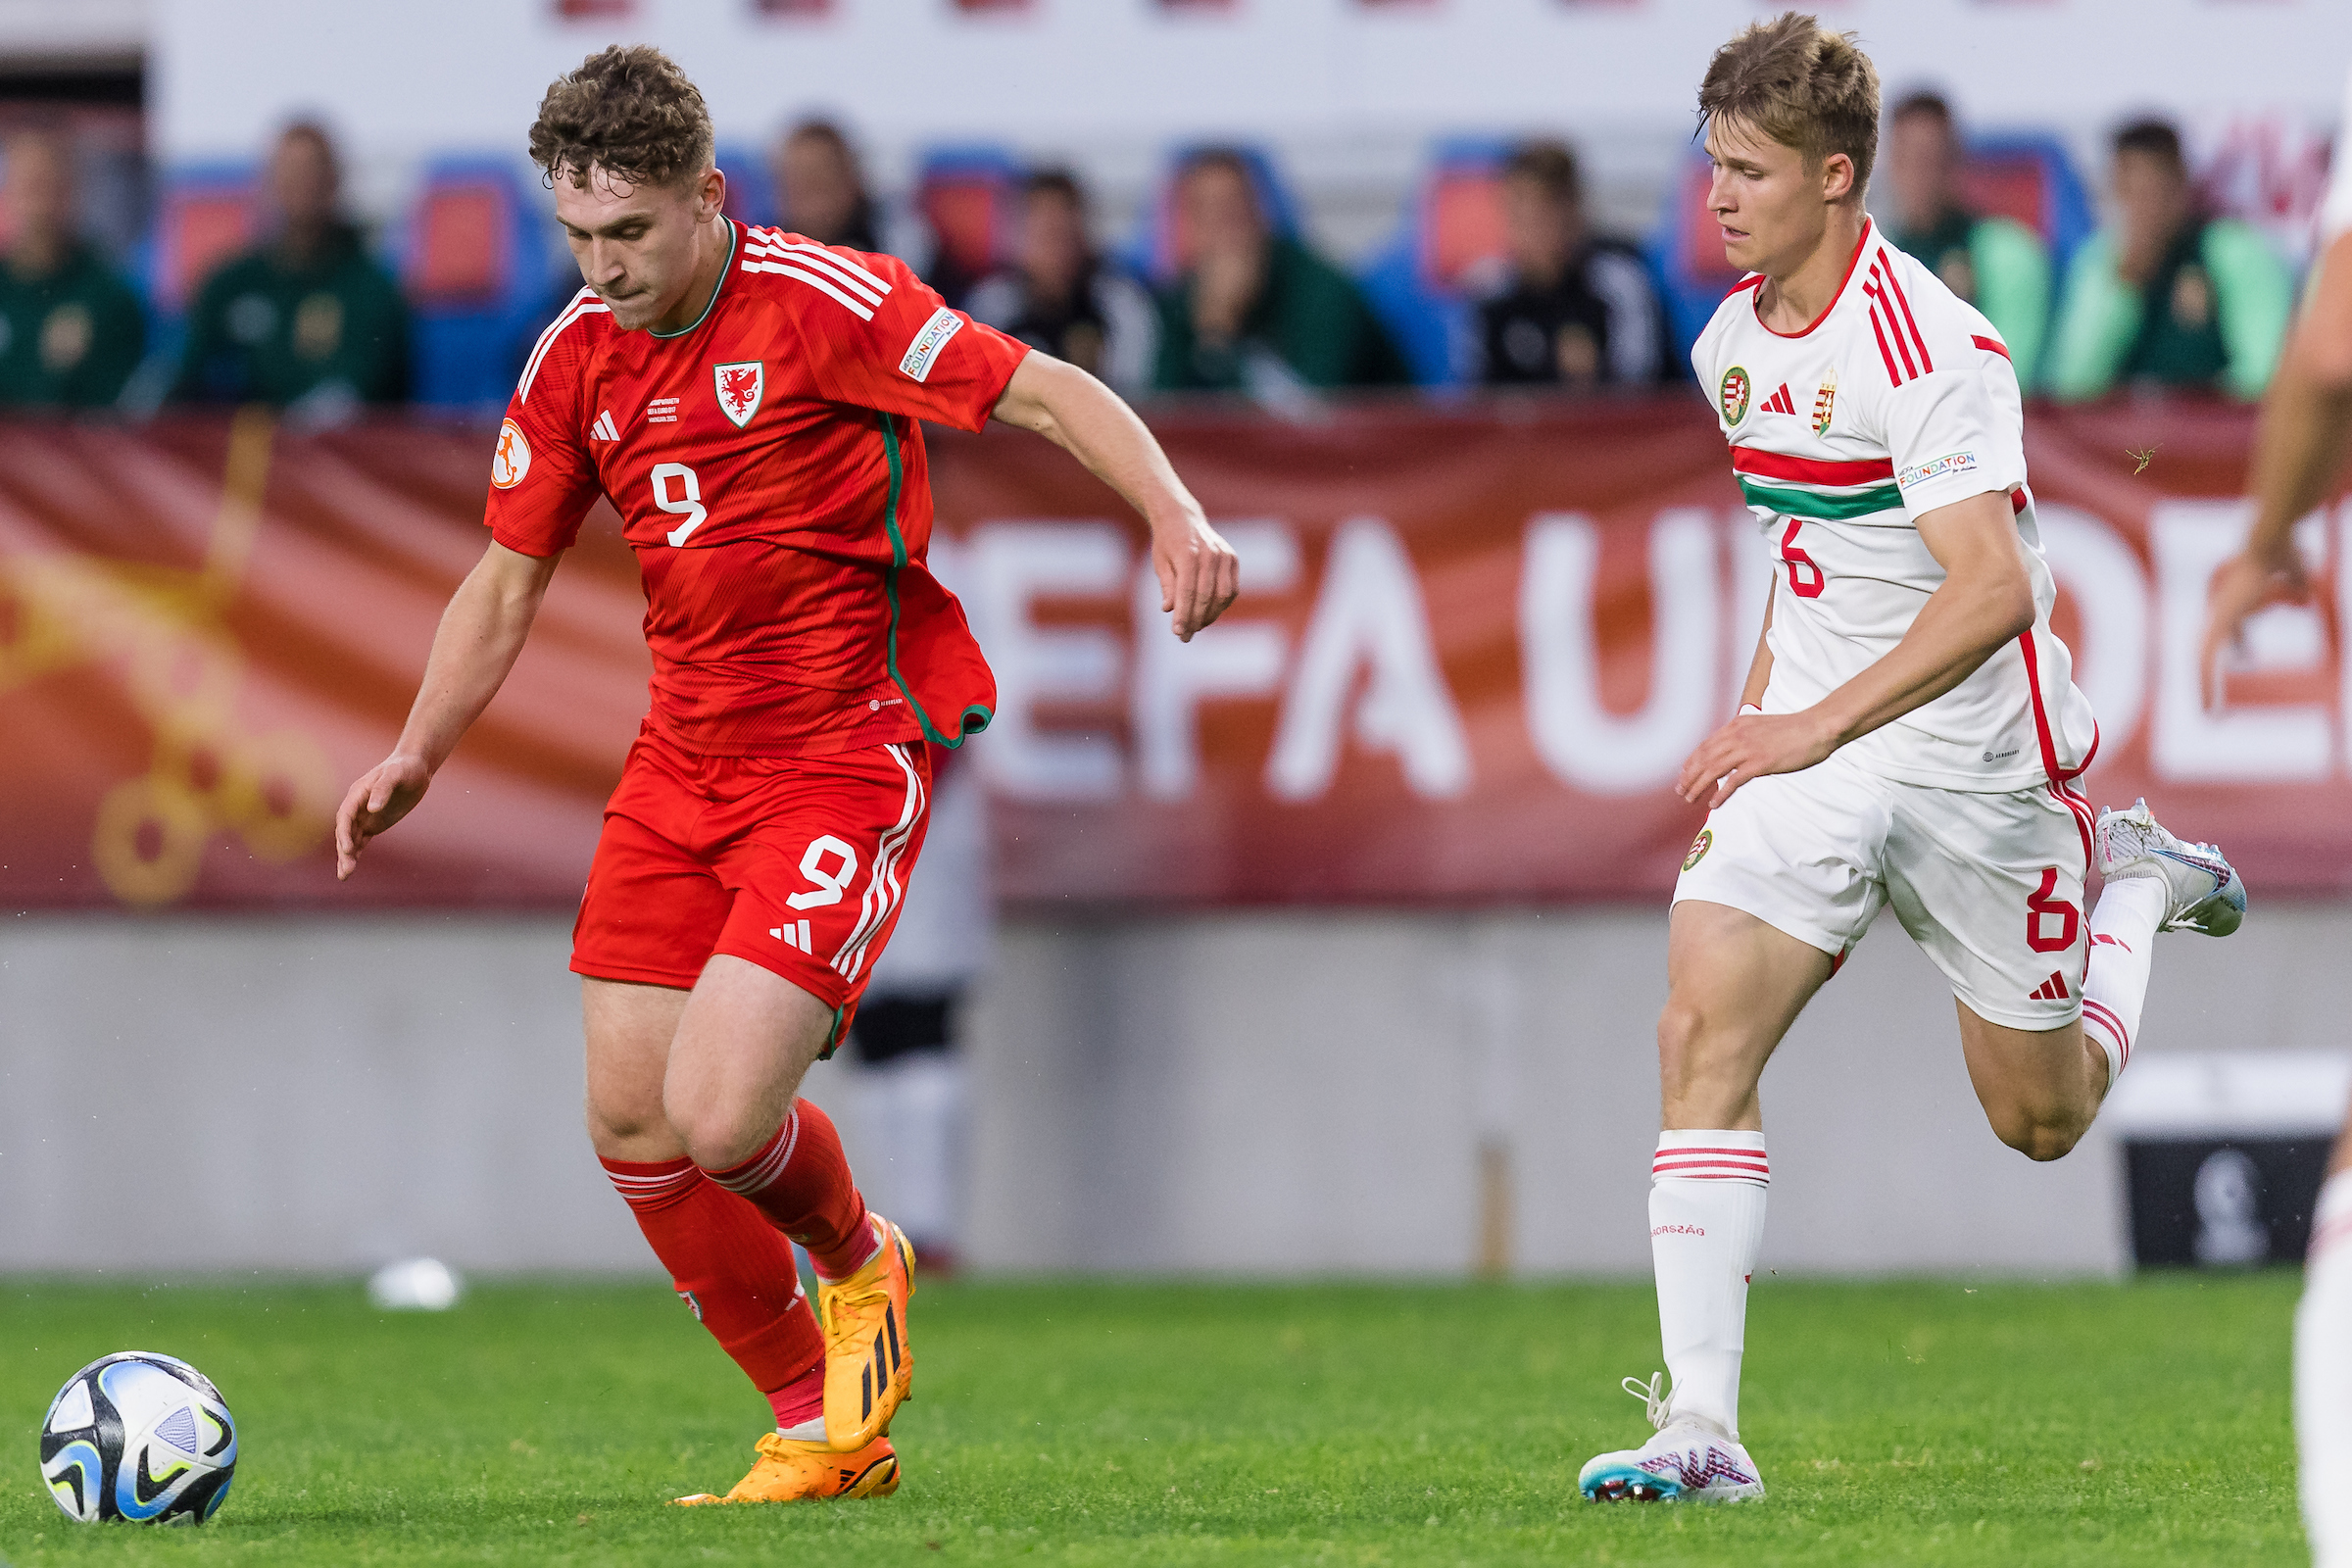 Wales 3-0-ra kikapott Magyarországtól az U17-es Eb-n